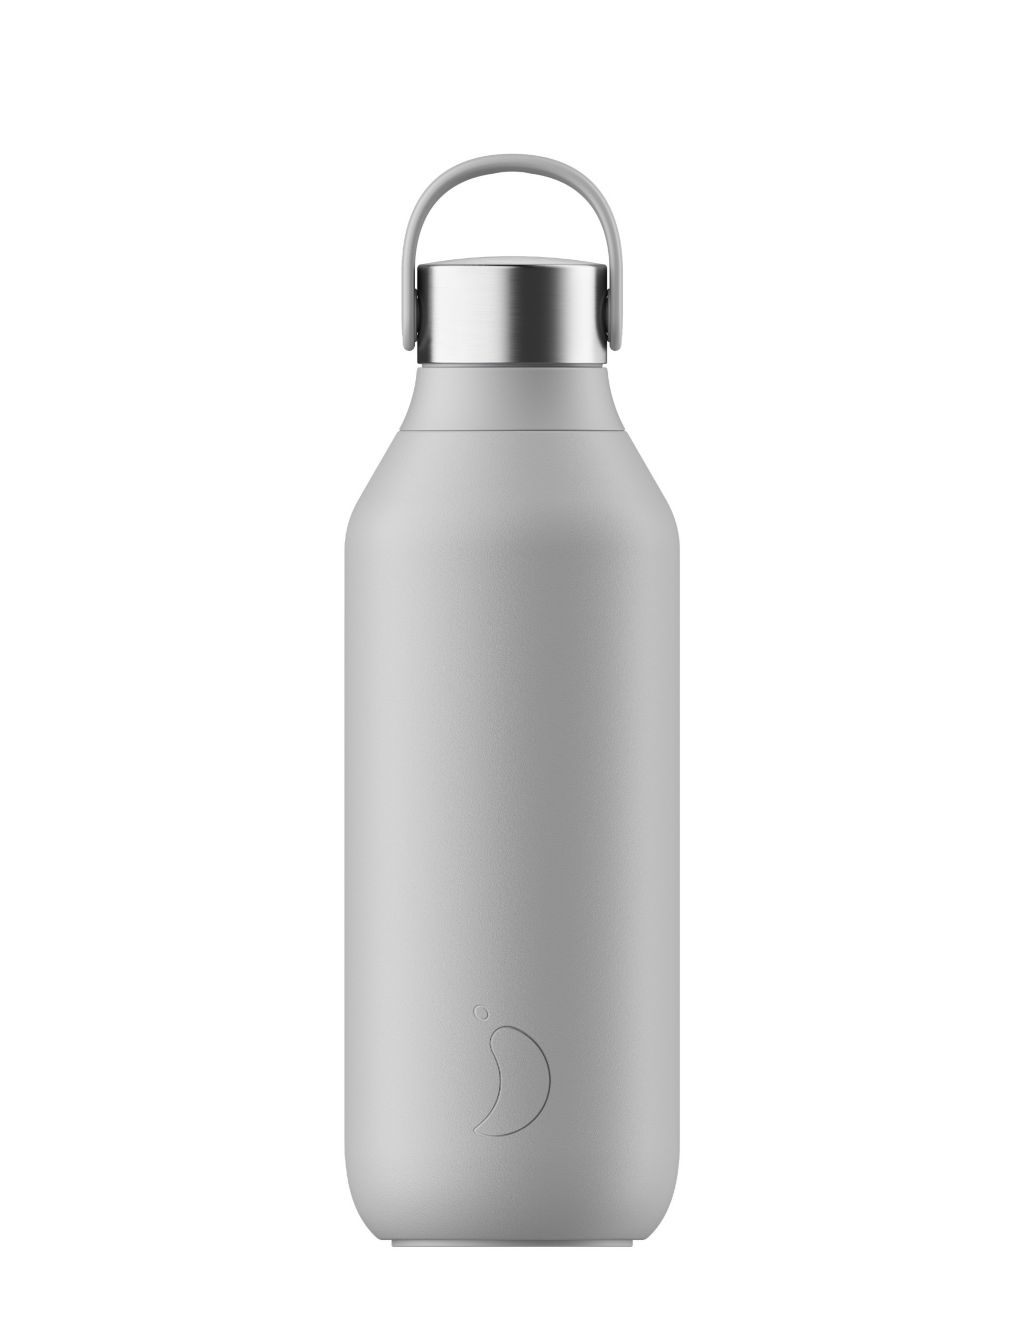 Series 2 Water Bottle